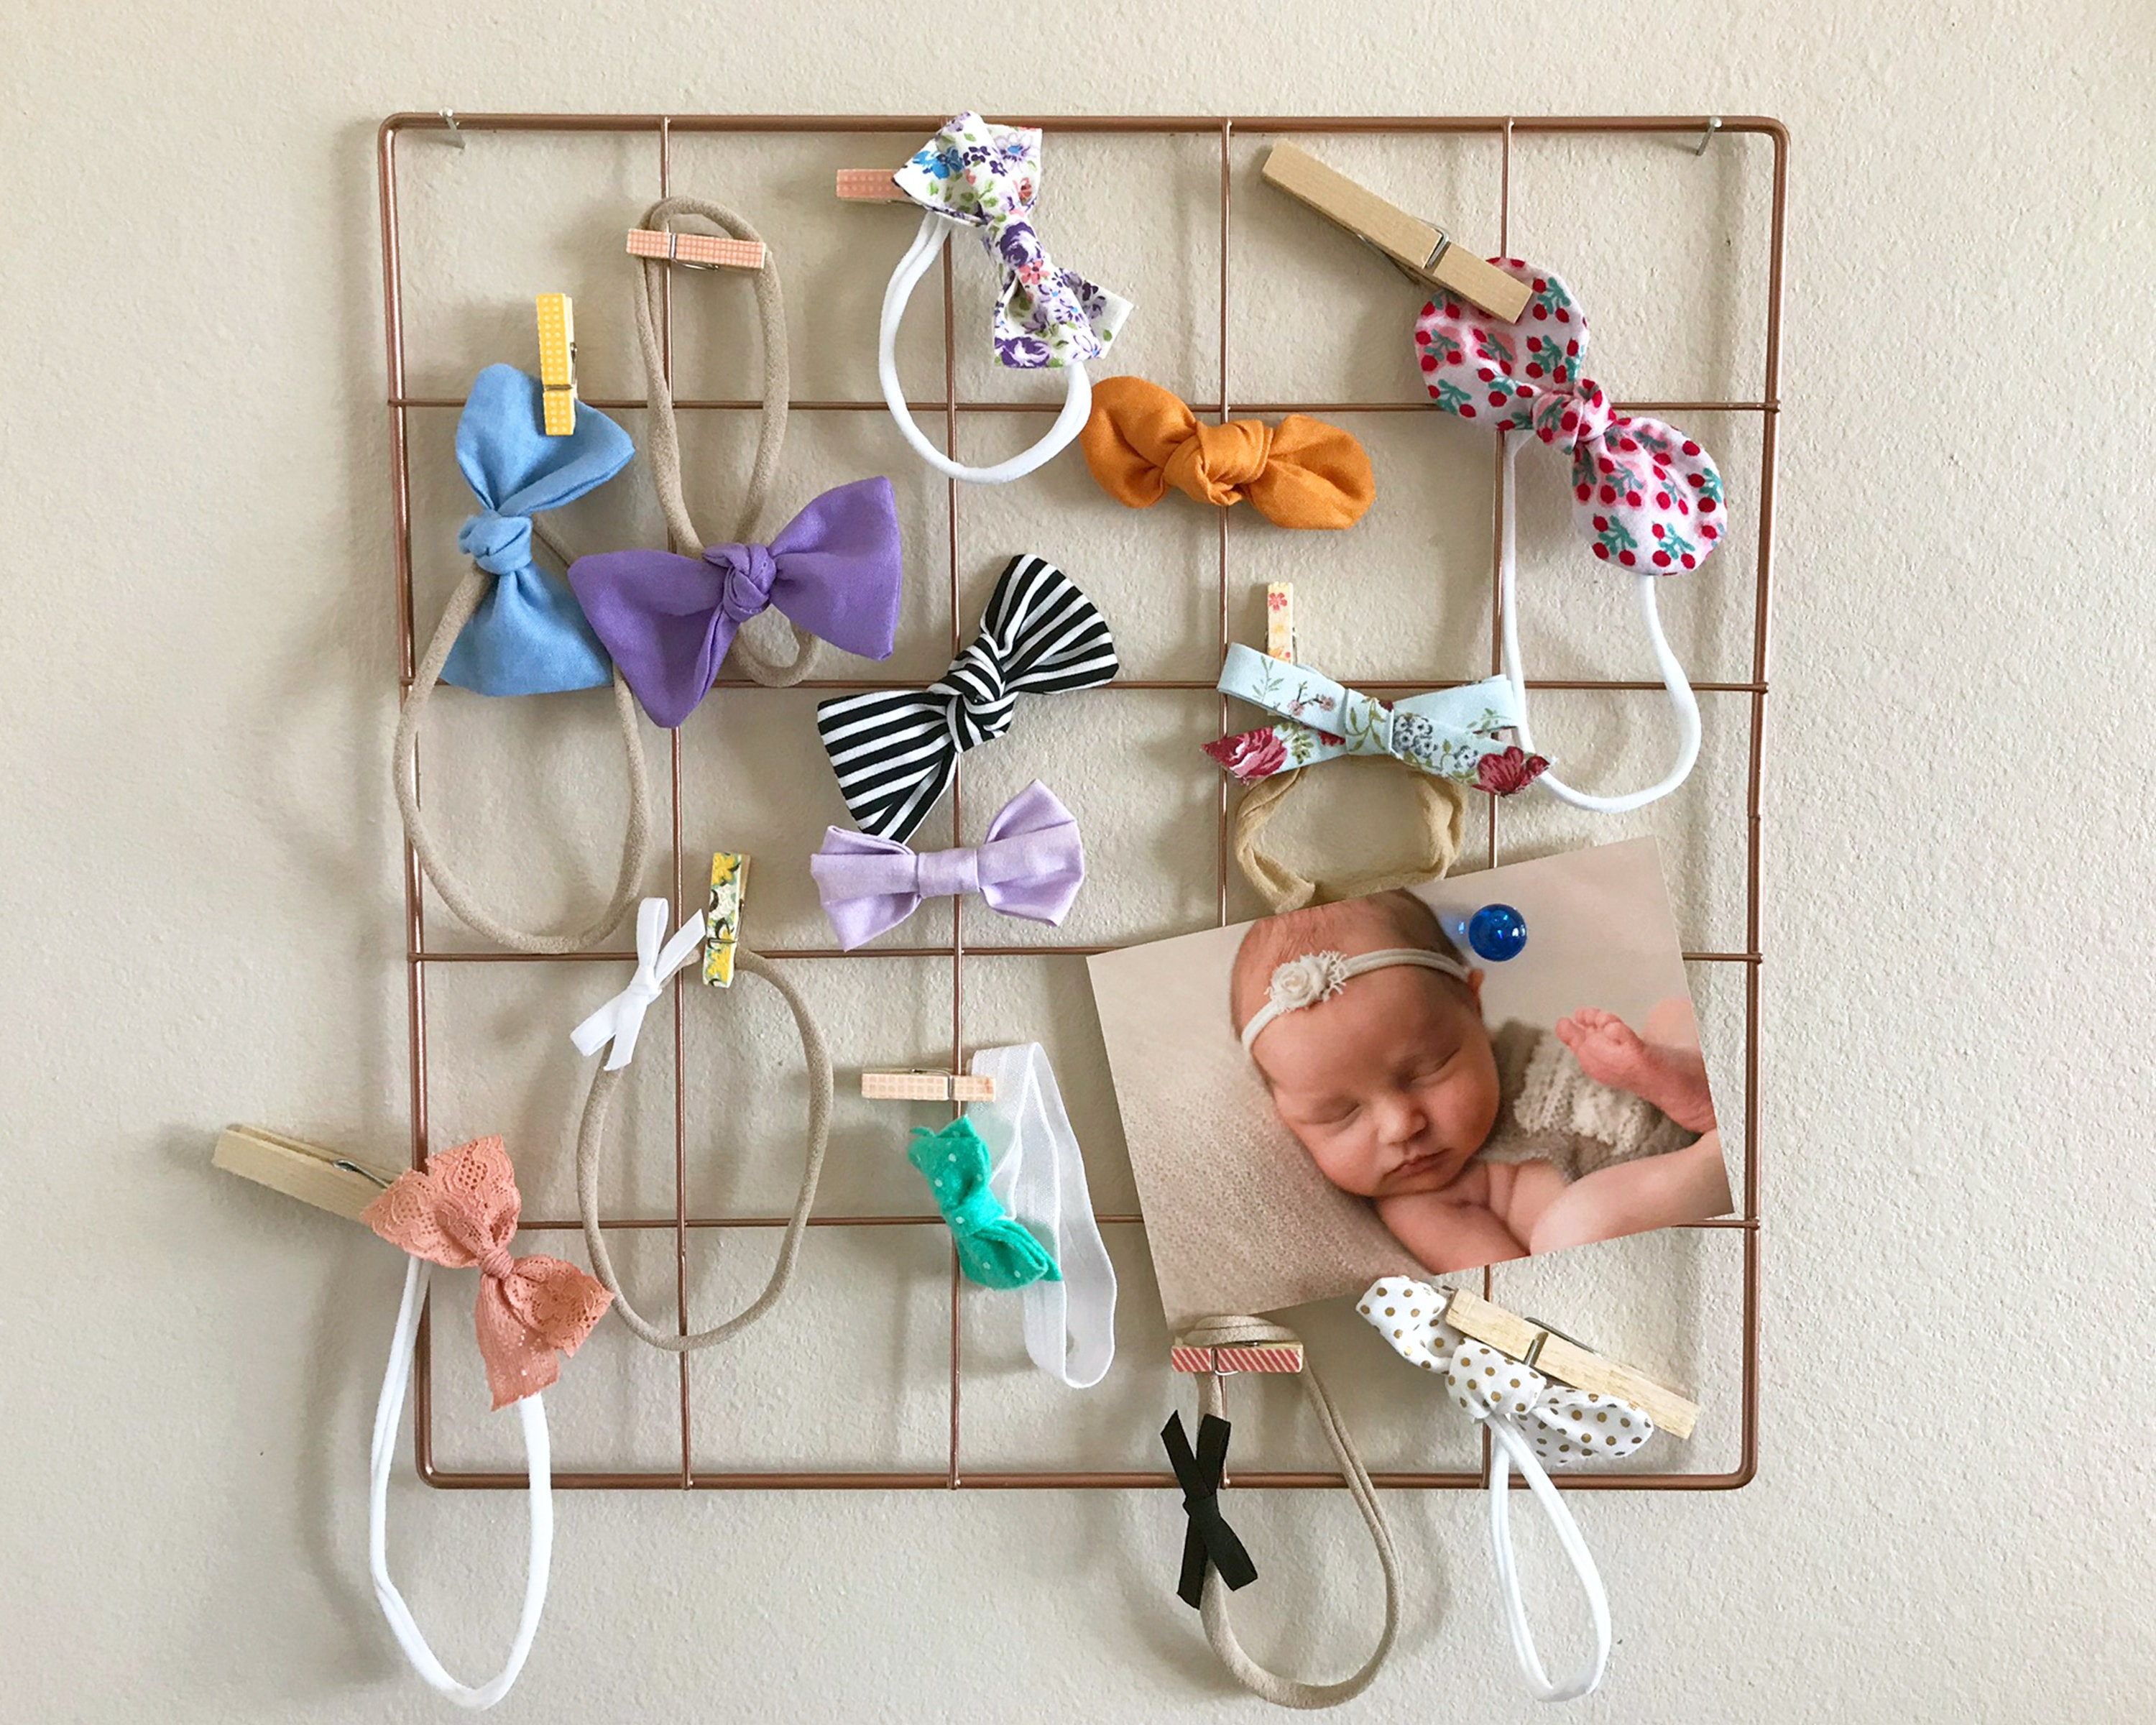 Baby Girl Hair Accessories Organizer - Shop on Pinterest